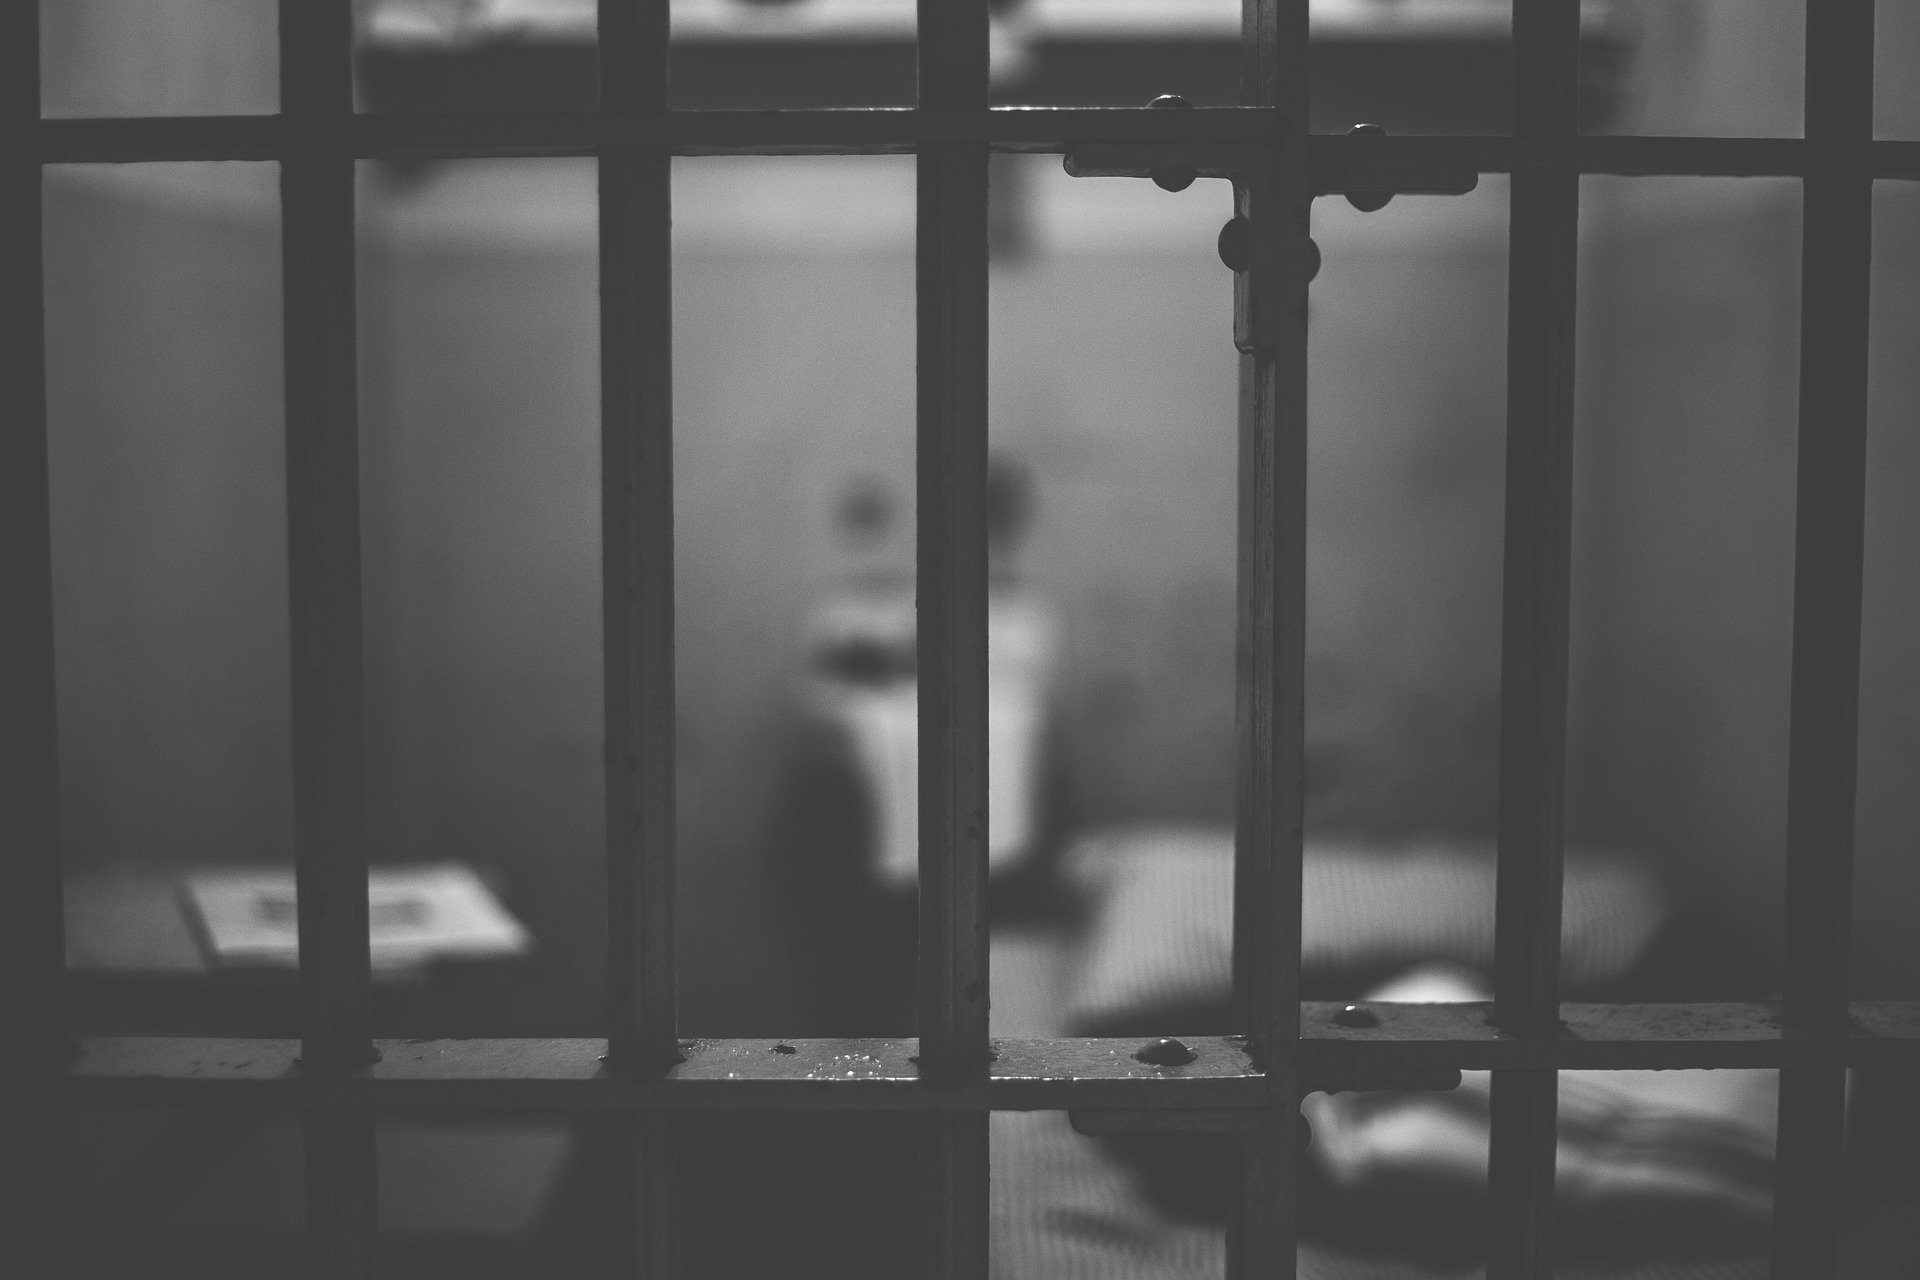 Les prévenus sont accusés de traite d'être humain. Crédit : Pixabay